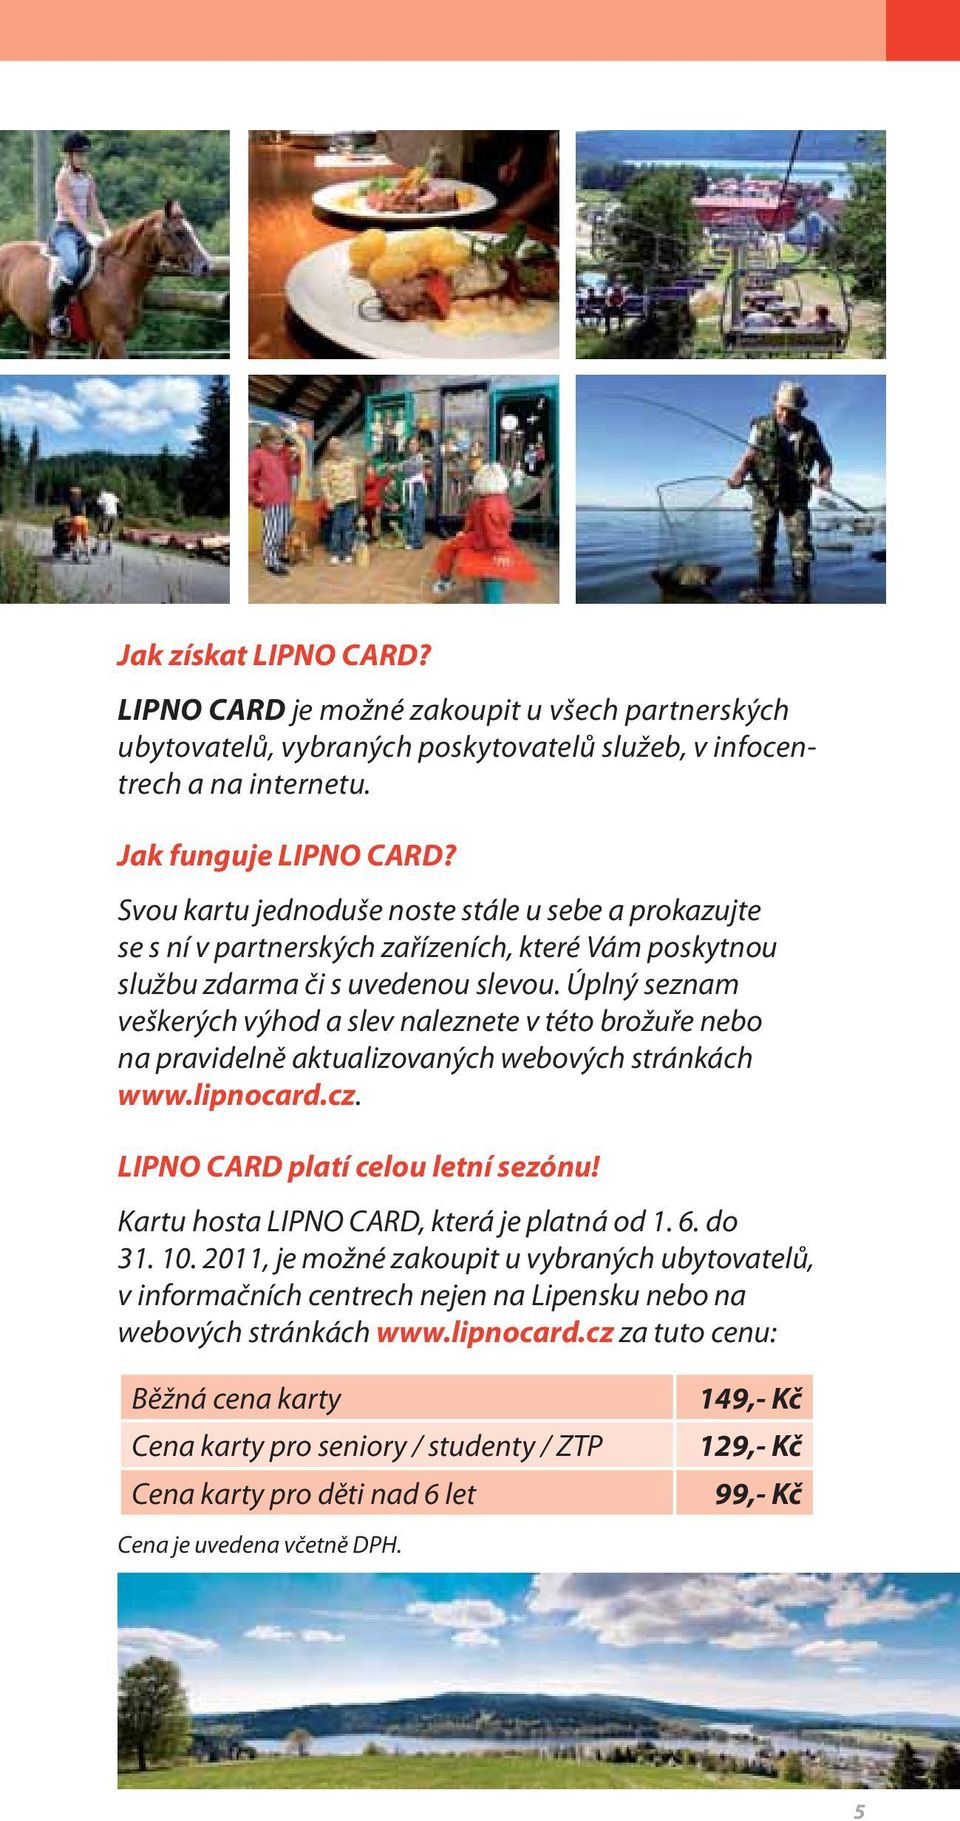 Úplný seznam veškerých výhod a slev naleznete v této brožuře nebo na pravidelně aktualizovaných webových stránkách www.lipnocard.cz. LIPNO CARD platí celou letní sezónu!